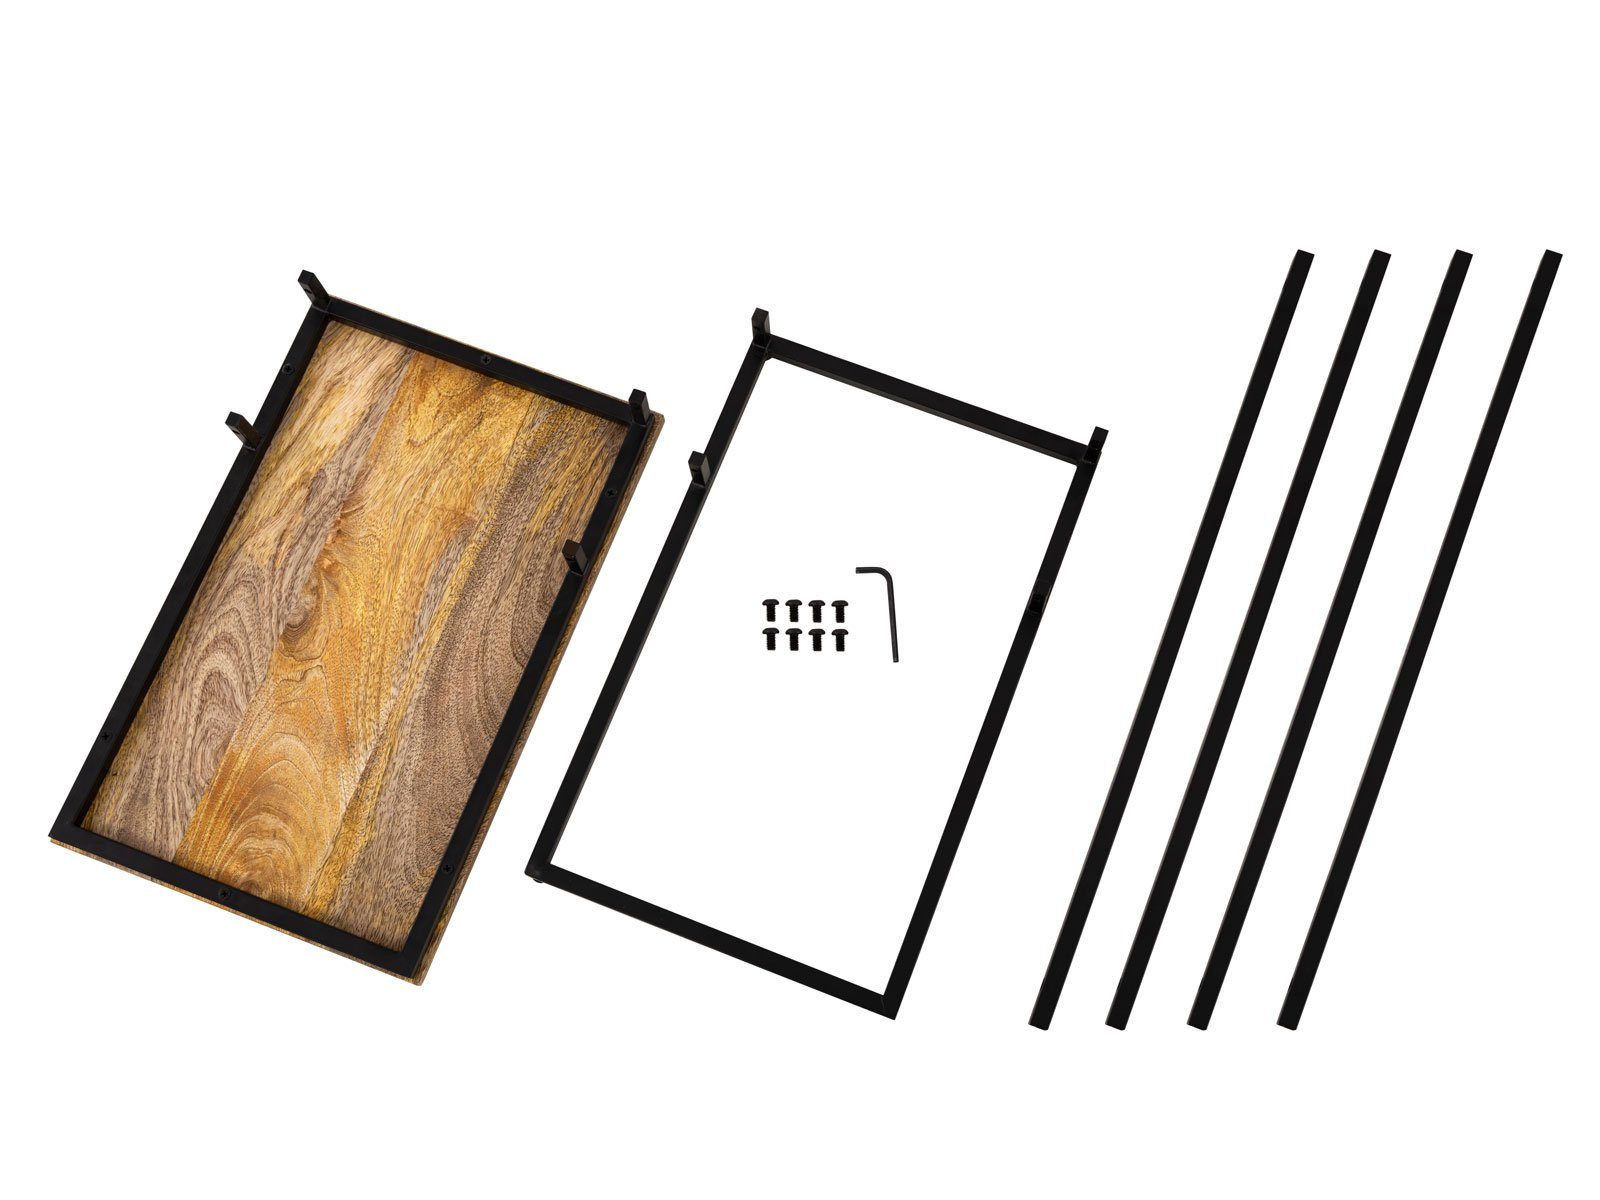 Beistelltisch Laptoptisch Sofatisch nachhaltig Beistelltisch Holz Casamia C-Tisch 25x60x40cm